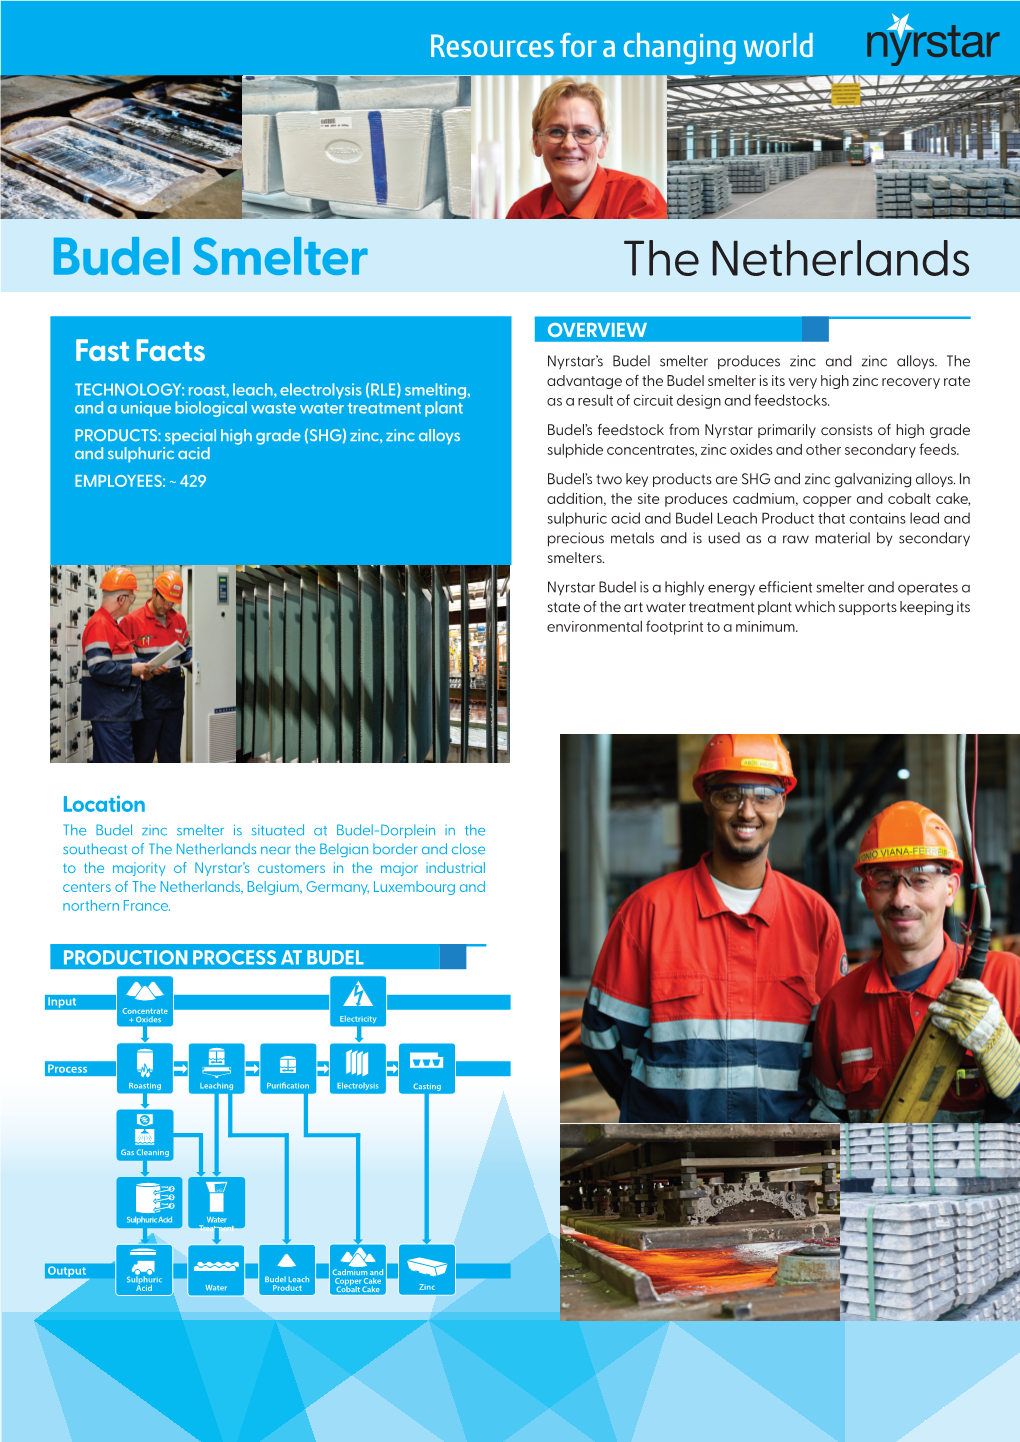 Budel Smelter the Netherlands